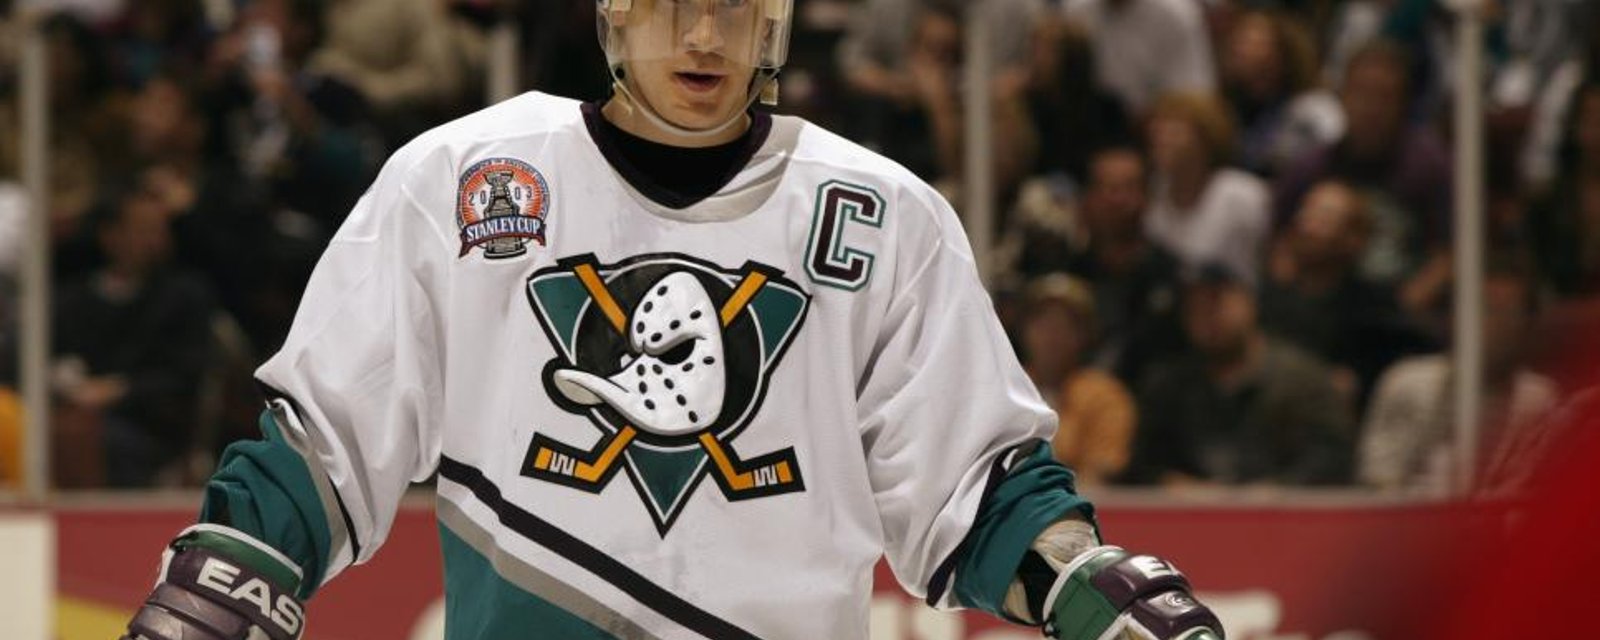 Les Ducks vont retrouver leur ancien logo des années 90